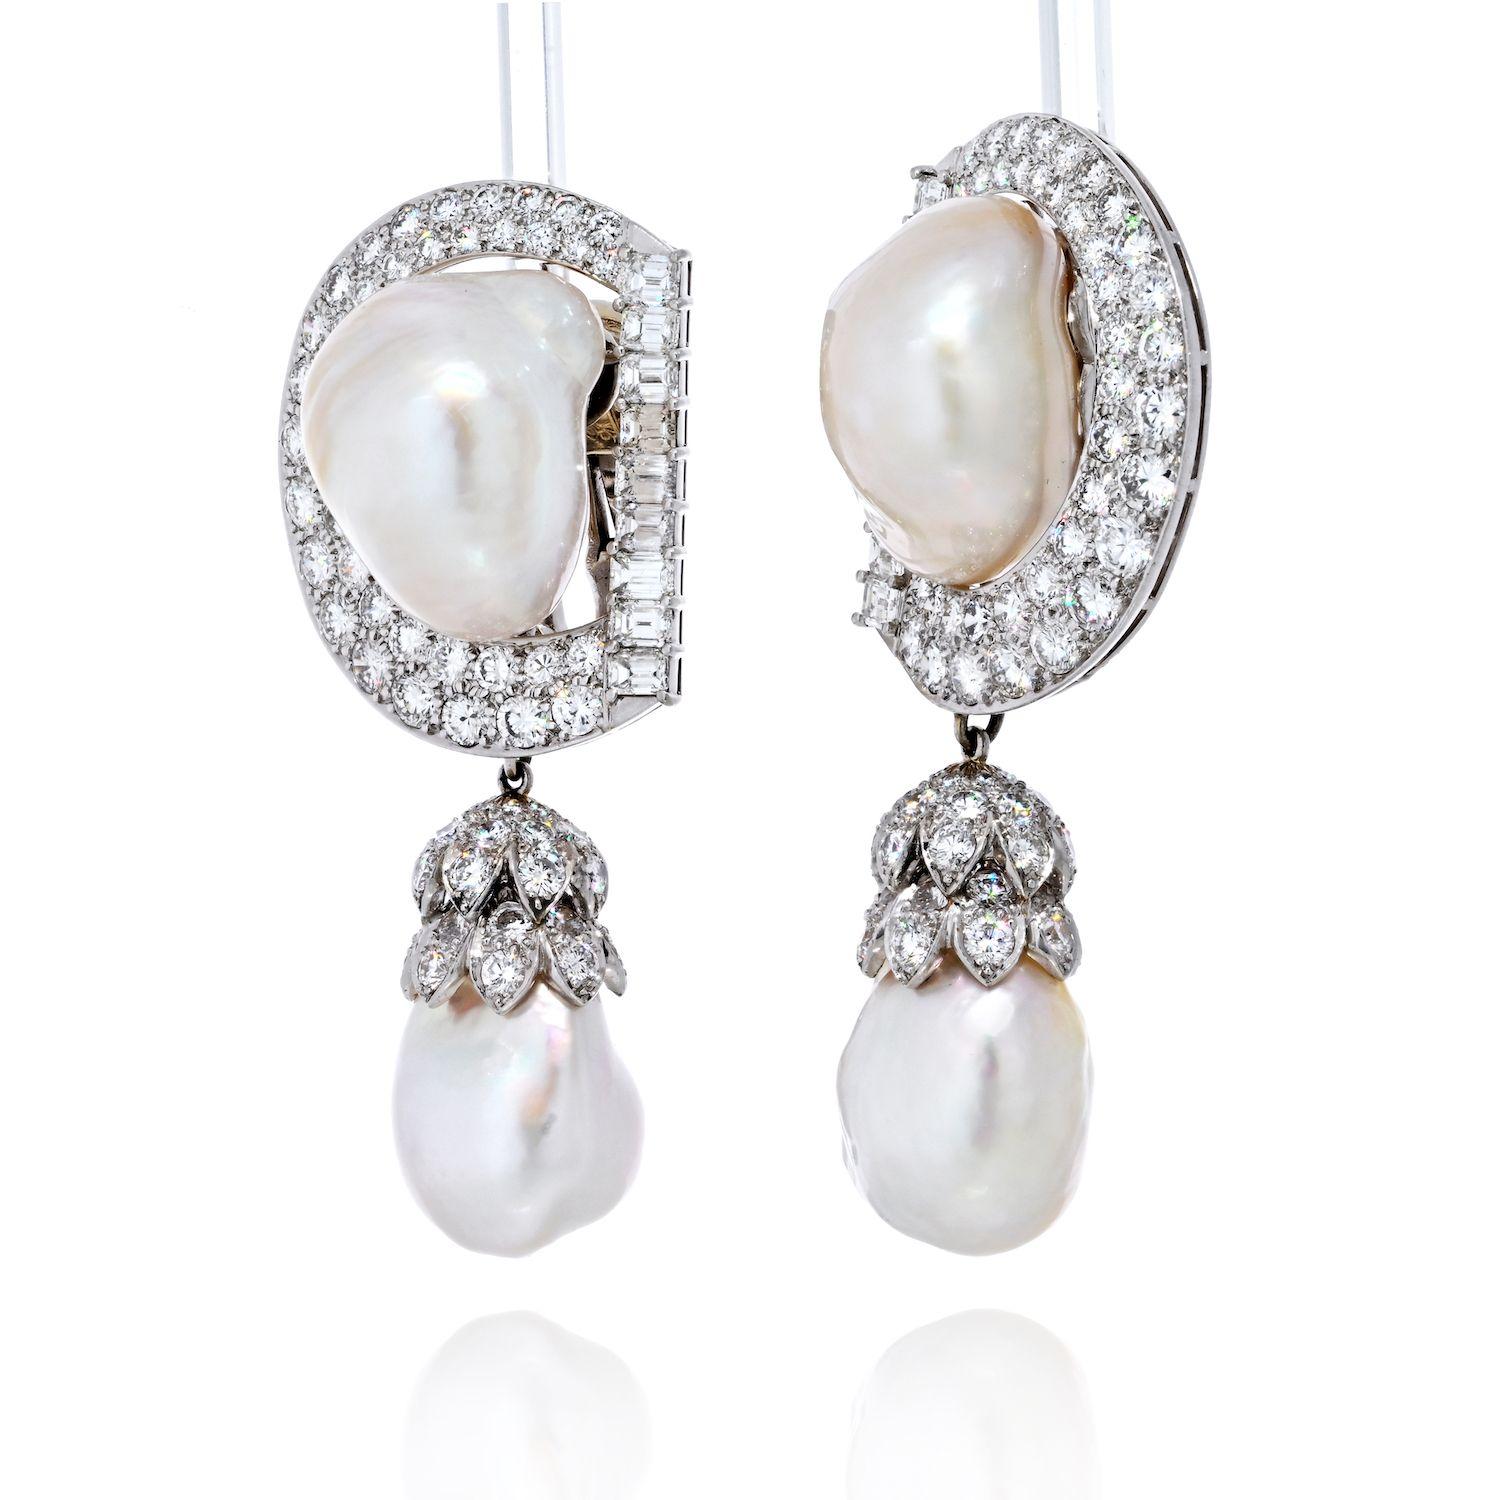 Die David Webb Baroque Pearl and Diamond Drop Earrings aus Platin sind ein Beispiel für die Meisterschaft des Designers, atemberaubende und einzigartige Stücke zu kreieren. Dieses exquisite Paar Ohrringe verbindet die organische Schönheit großer